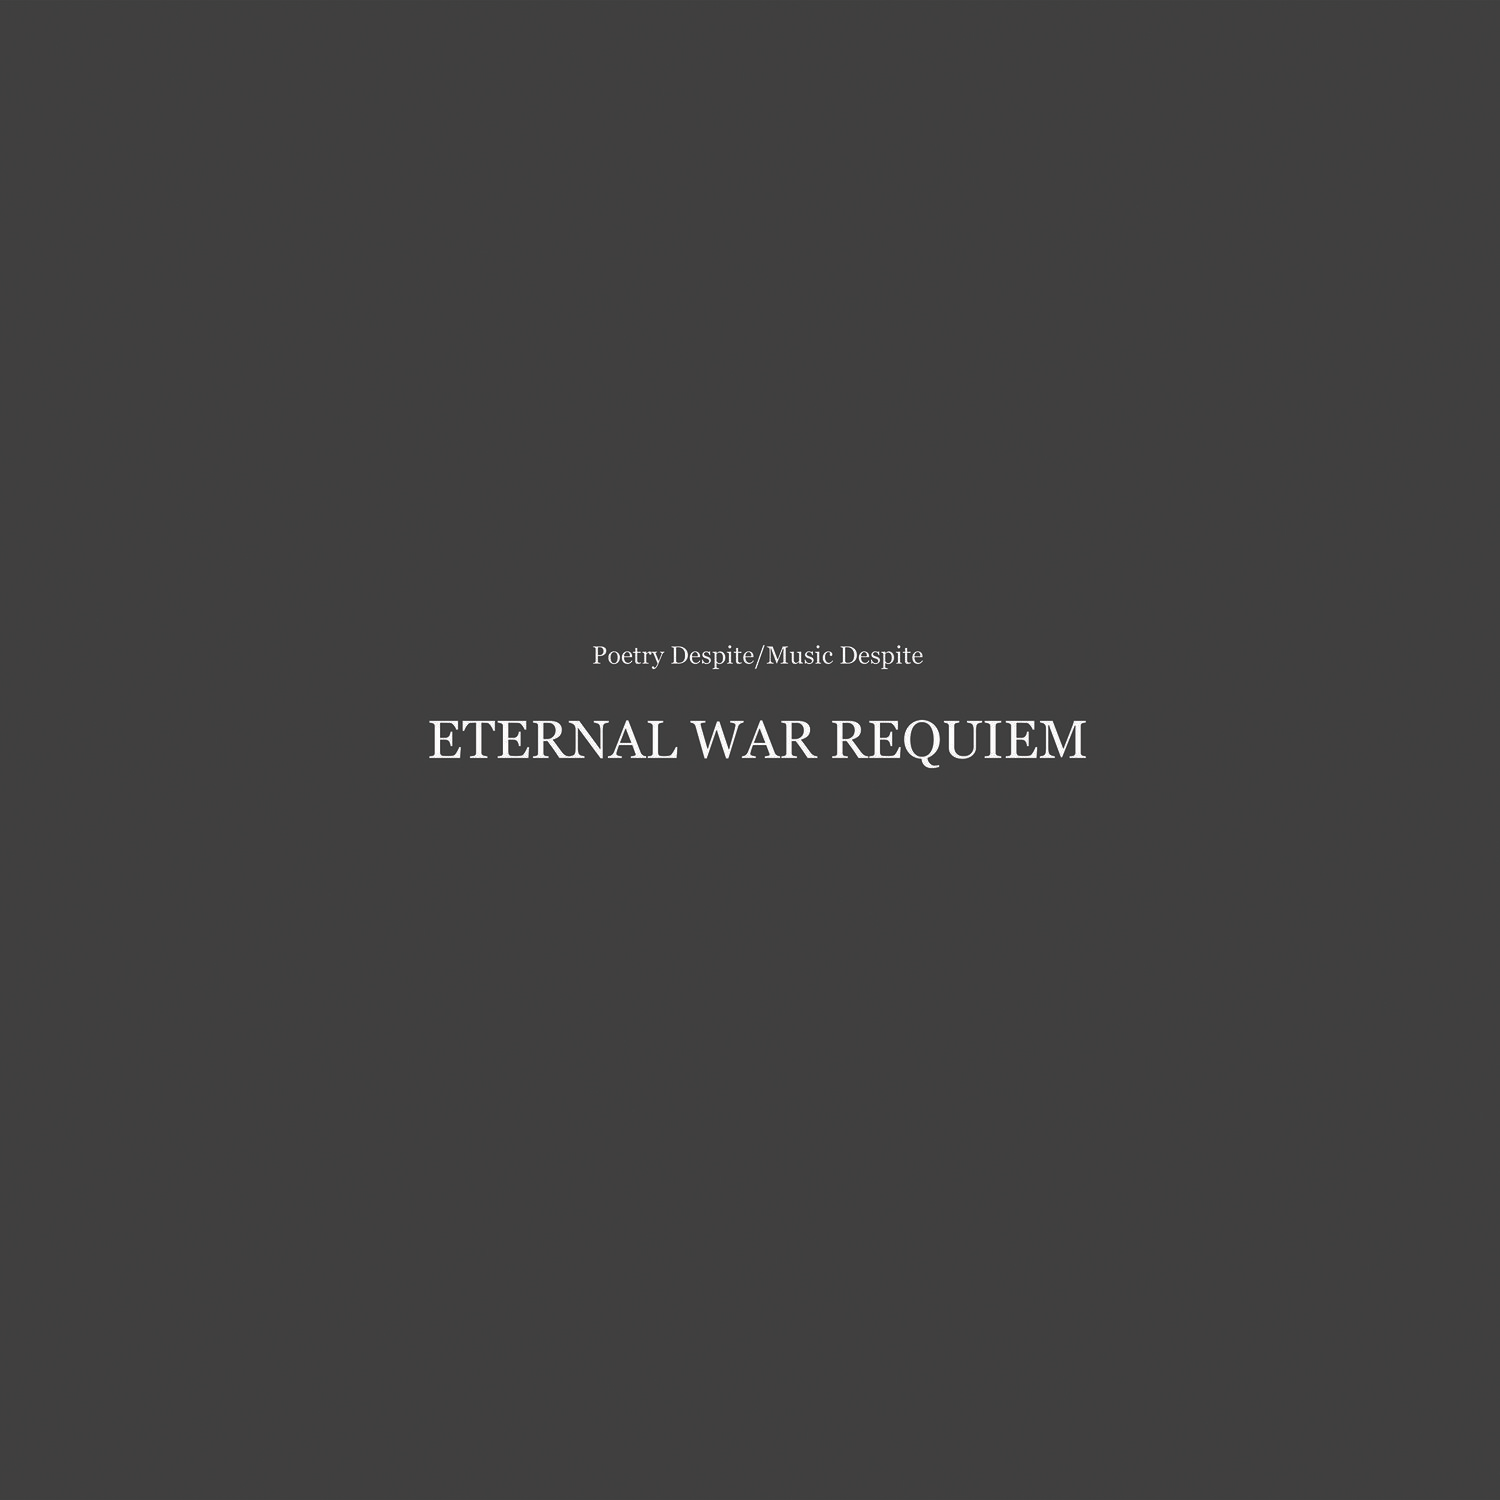 Poetry Despite/Music Despite (Eternal War Requiem)